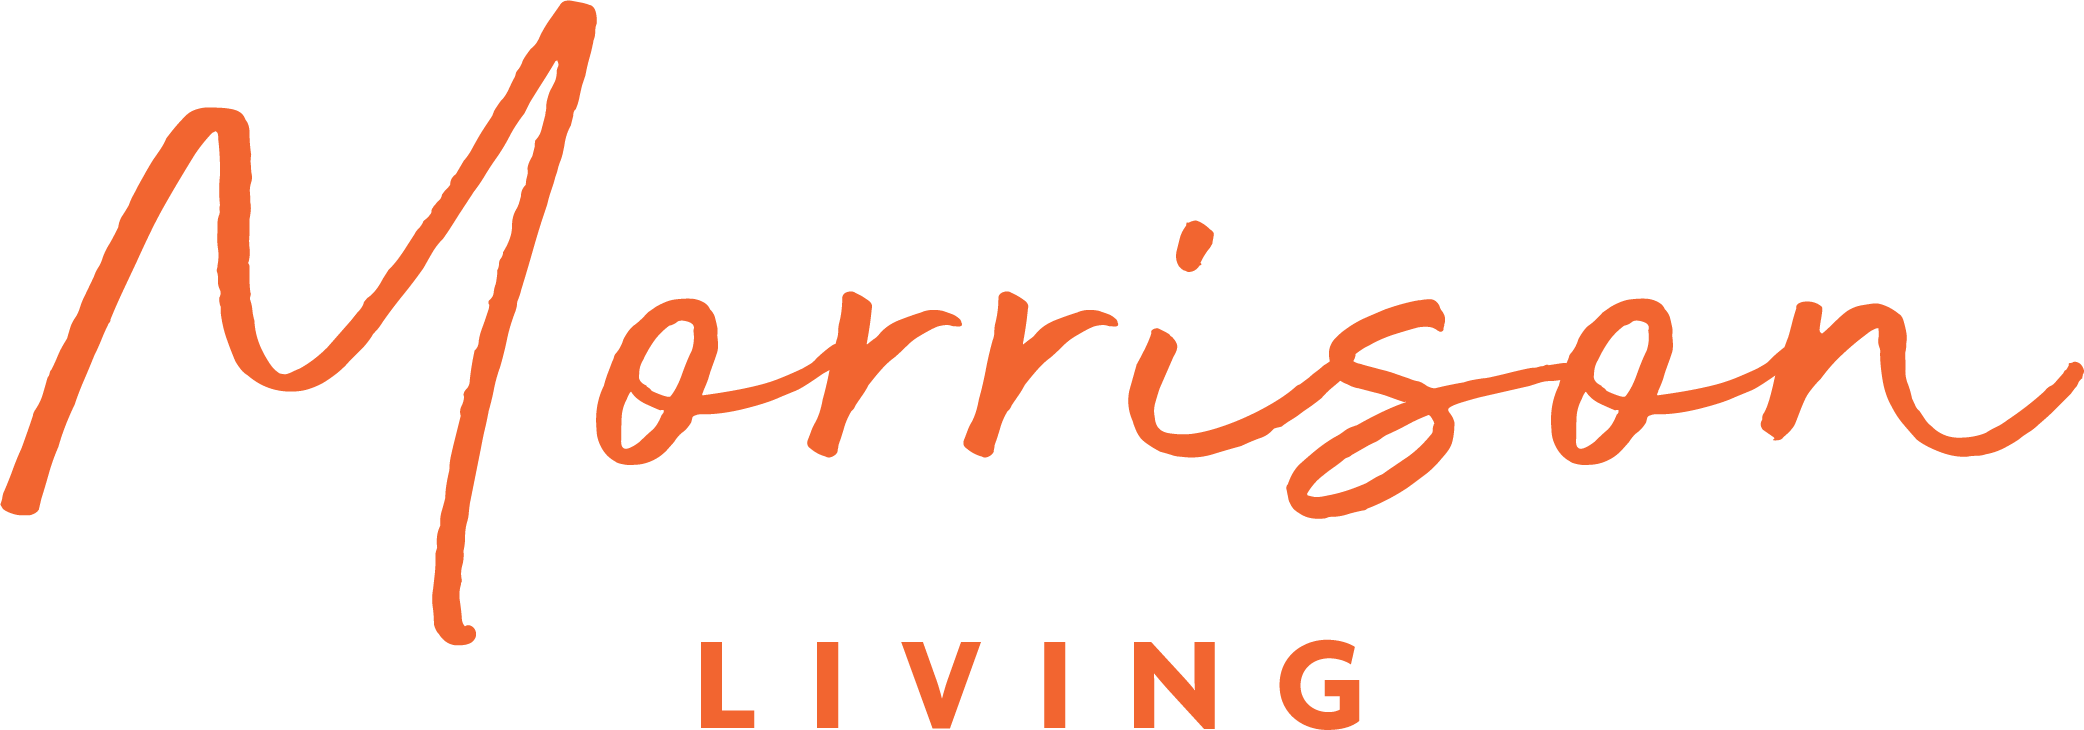 Morrison Logo